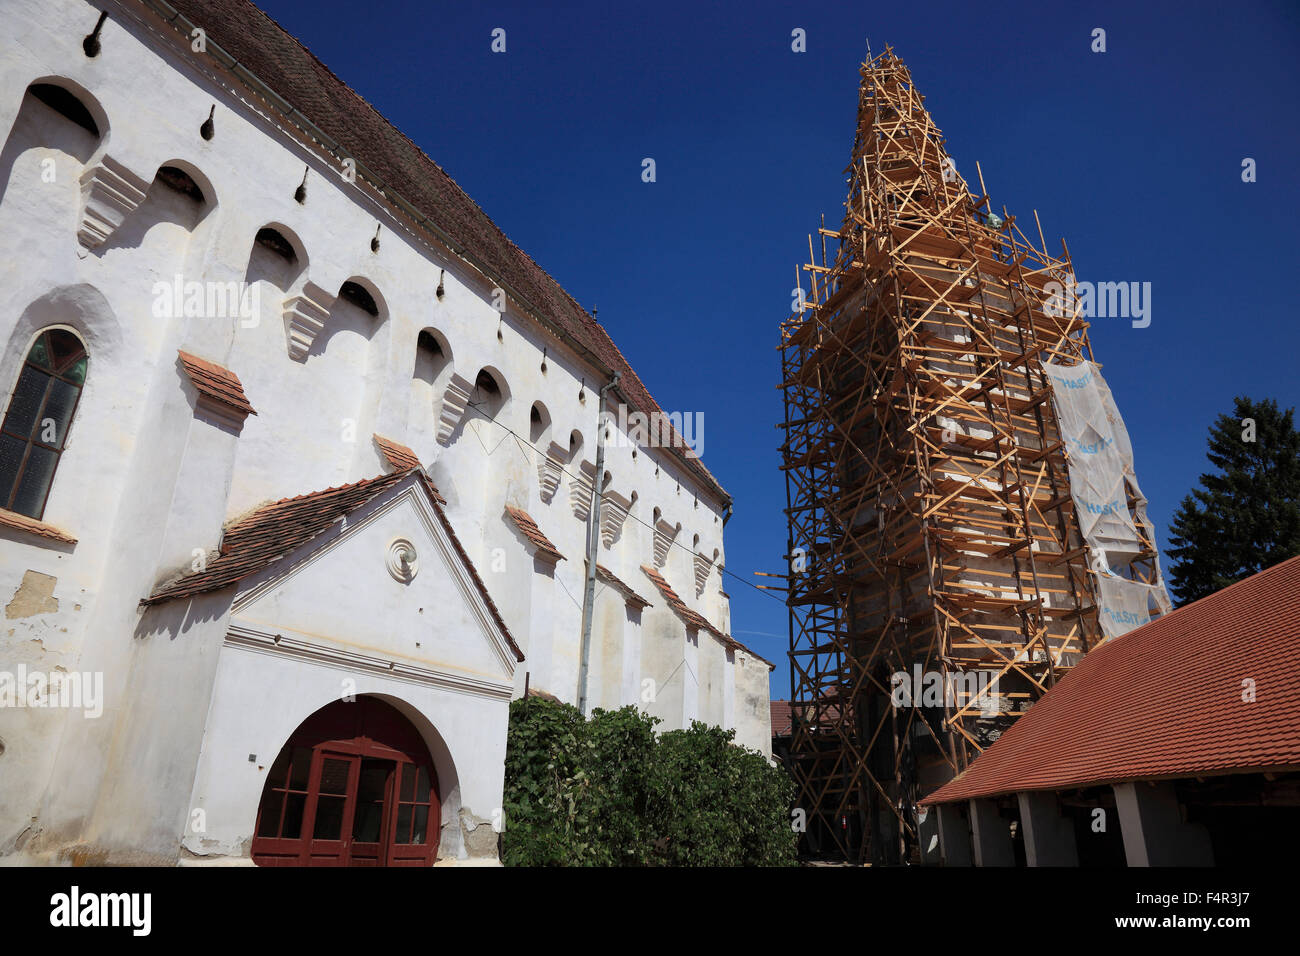 Lavori di ristrutturazione sul sito Patrimonio Mondiale dell'UNESCO, chiesa fortificata di Darjiu, Tedesco o Ders Doersch, una città in Harghita County Foto Stock